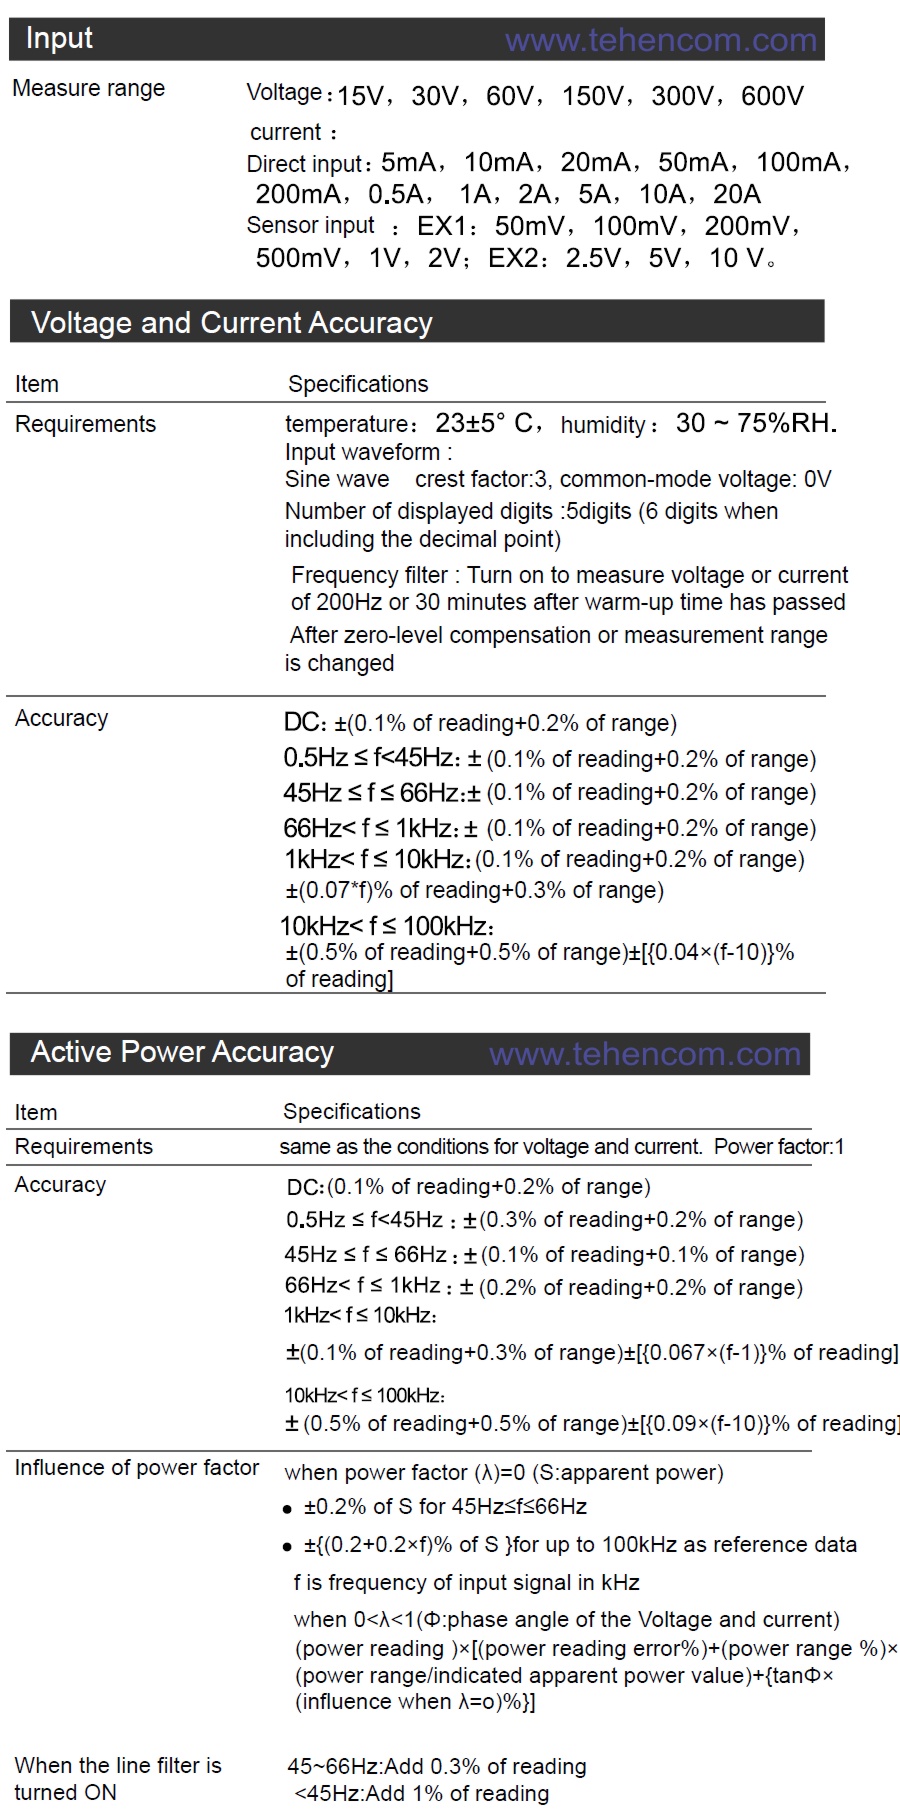 Технические характеристики эталонного измерителя электрической мощности ITECH IT9121